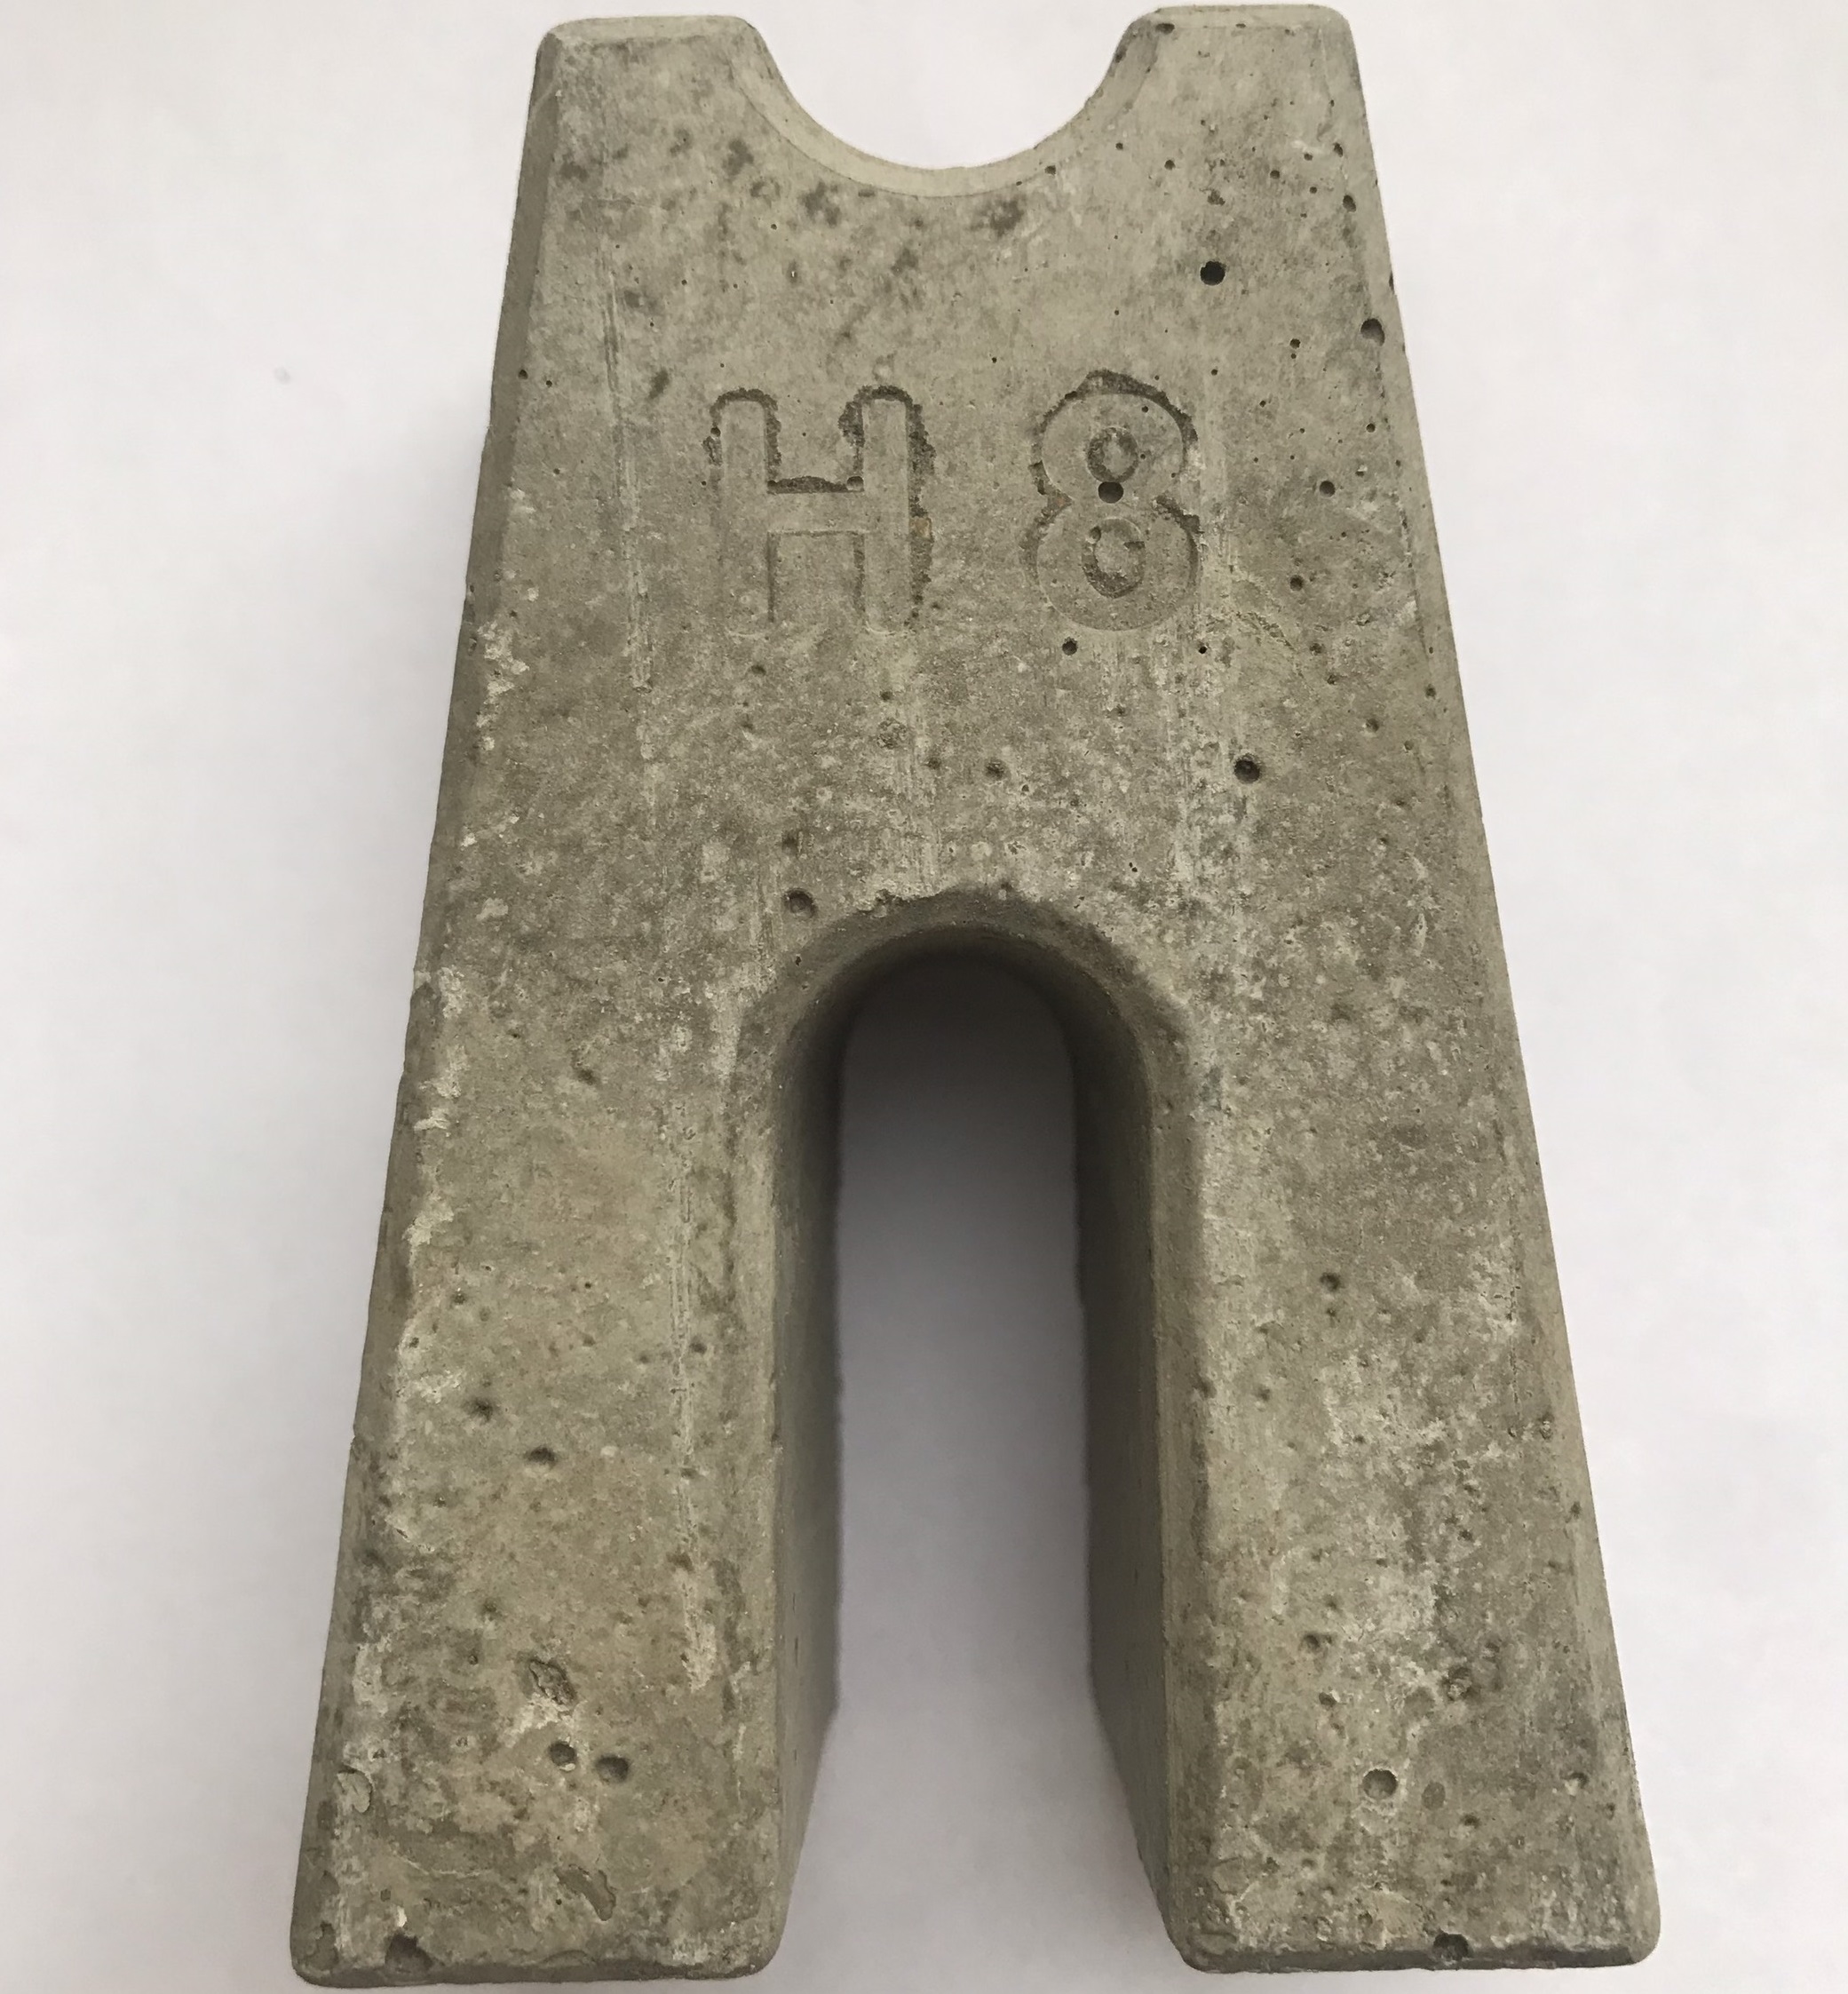 Con kê bê tông H8 – Cao 8cm